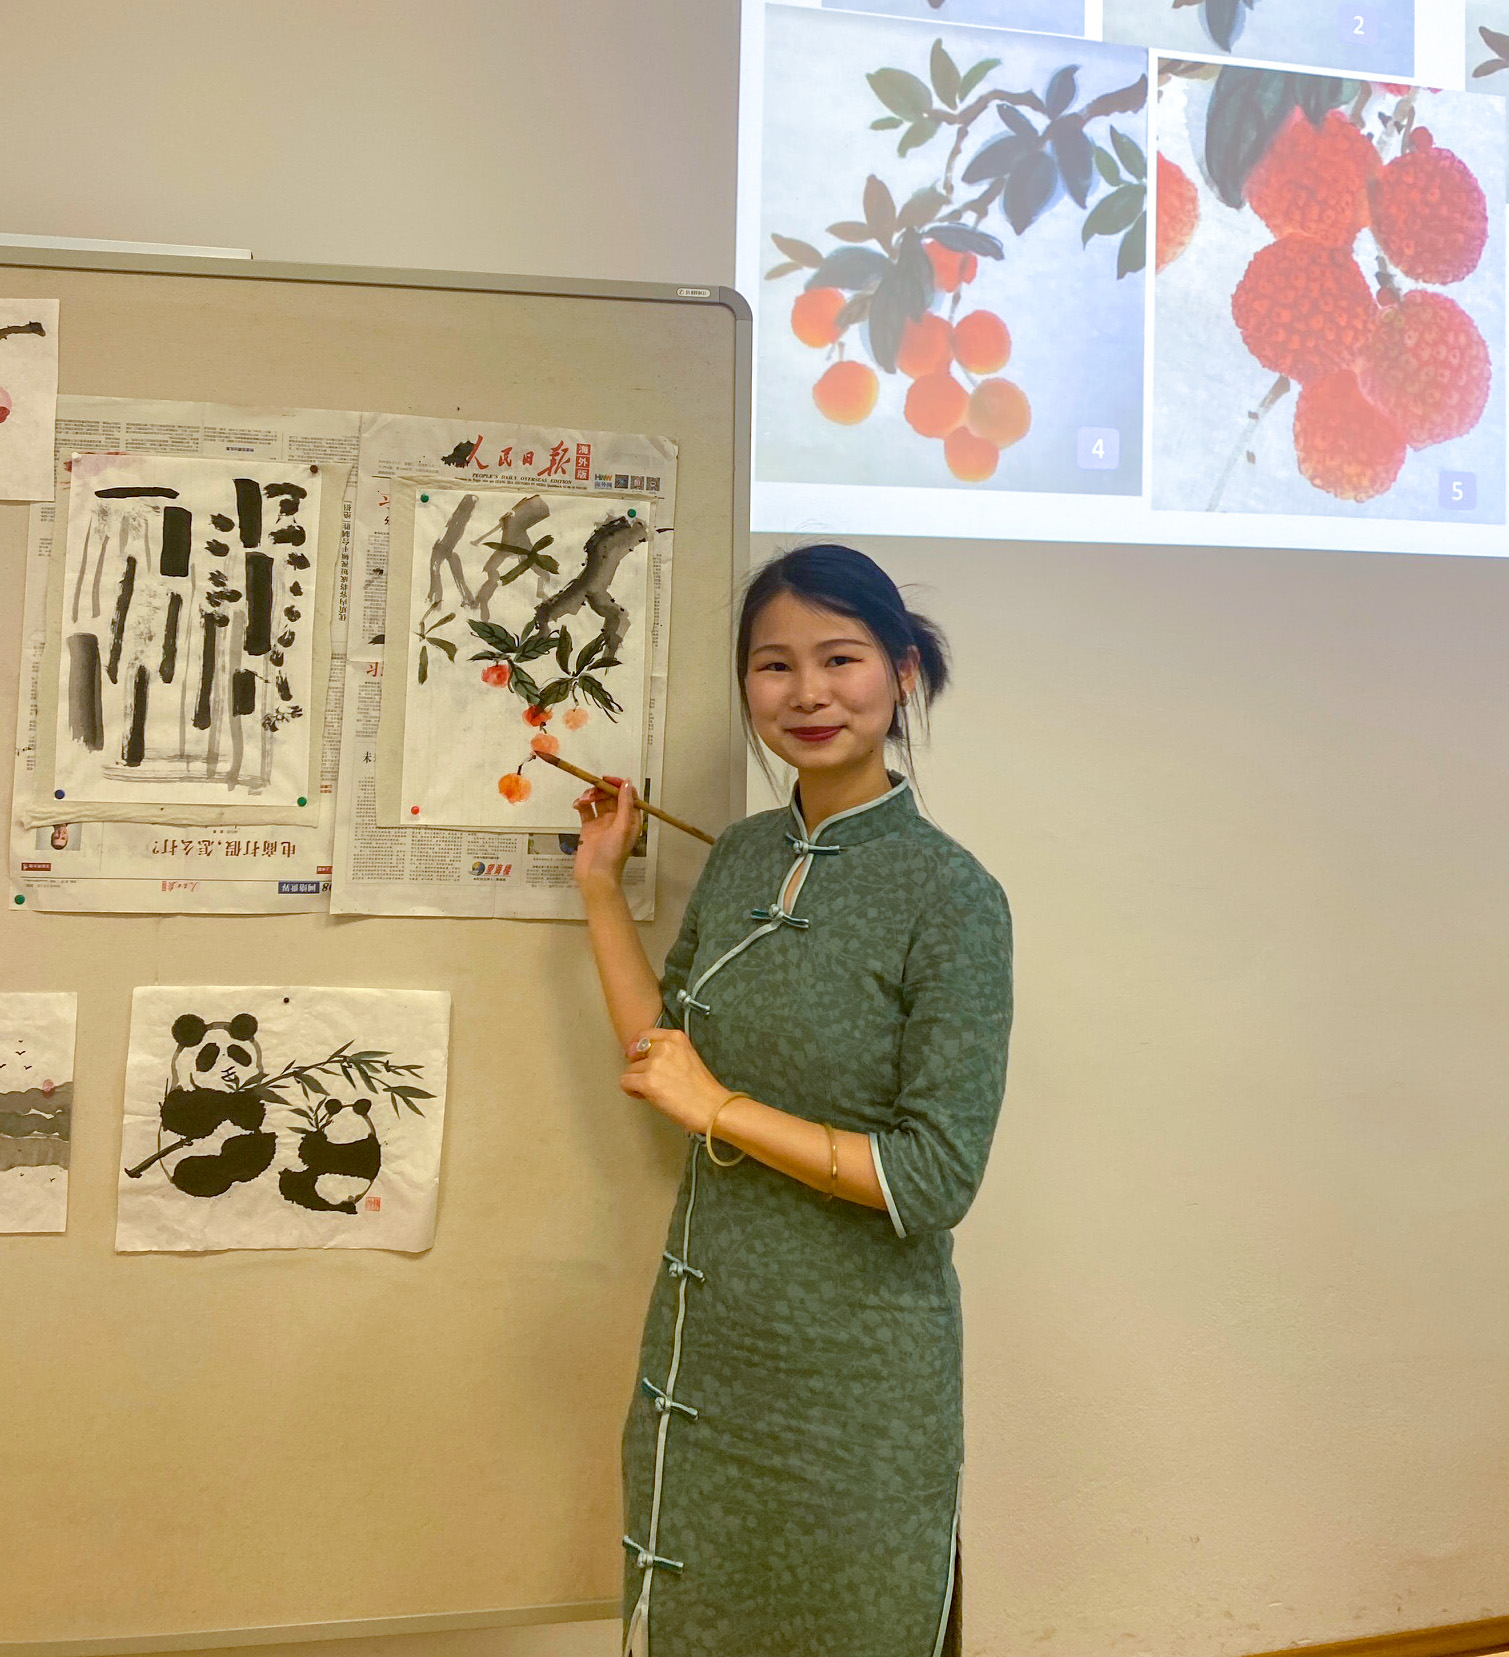 Kursleiterin des Malkurs zeigt an der Tafel die Maltechniken der chinesischen Malerei vor 